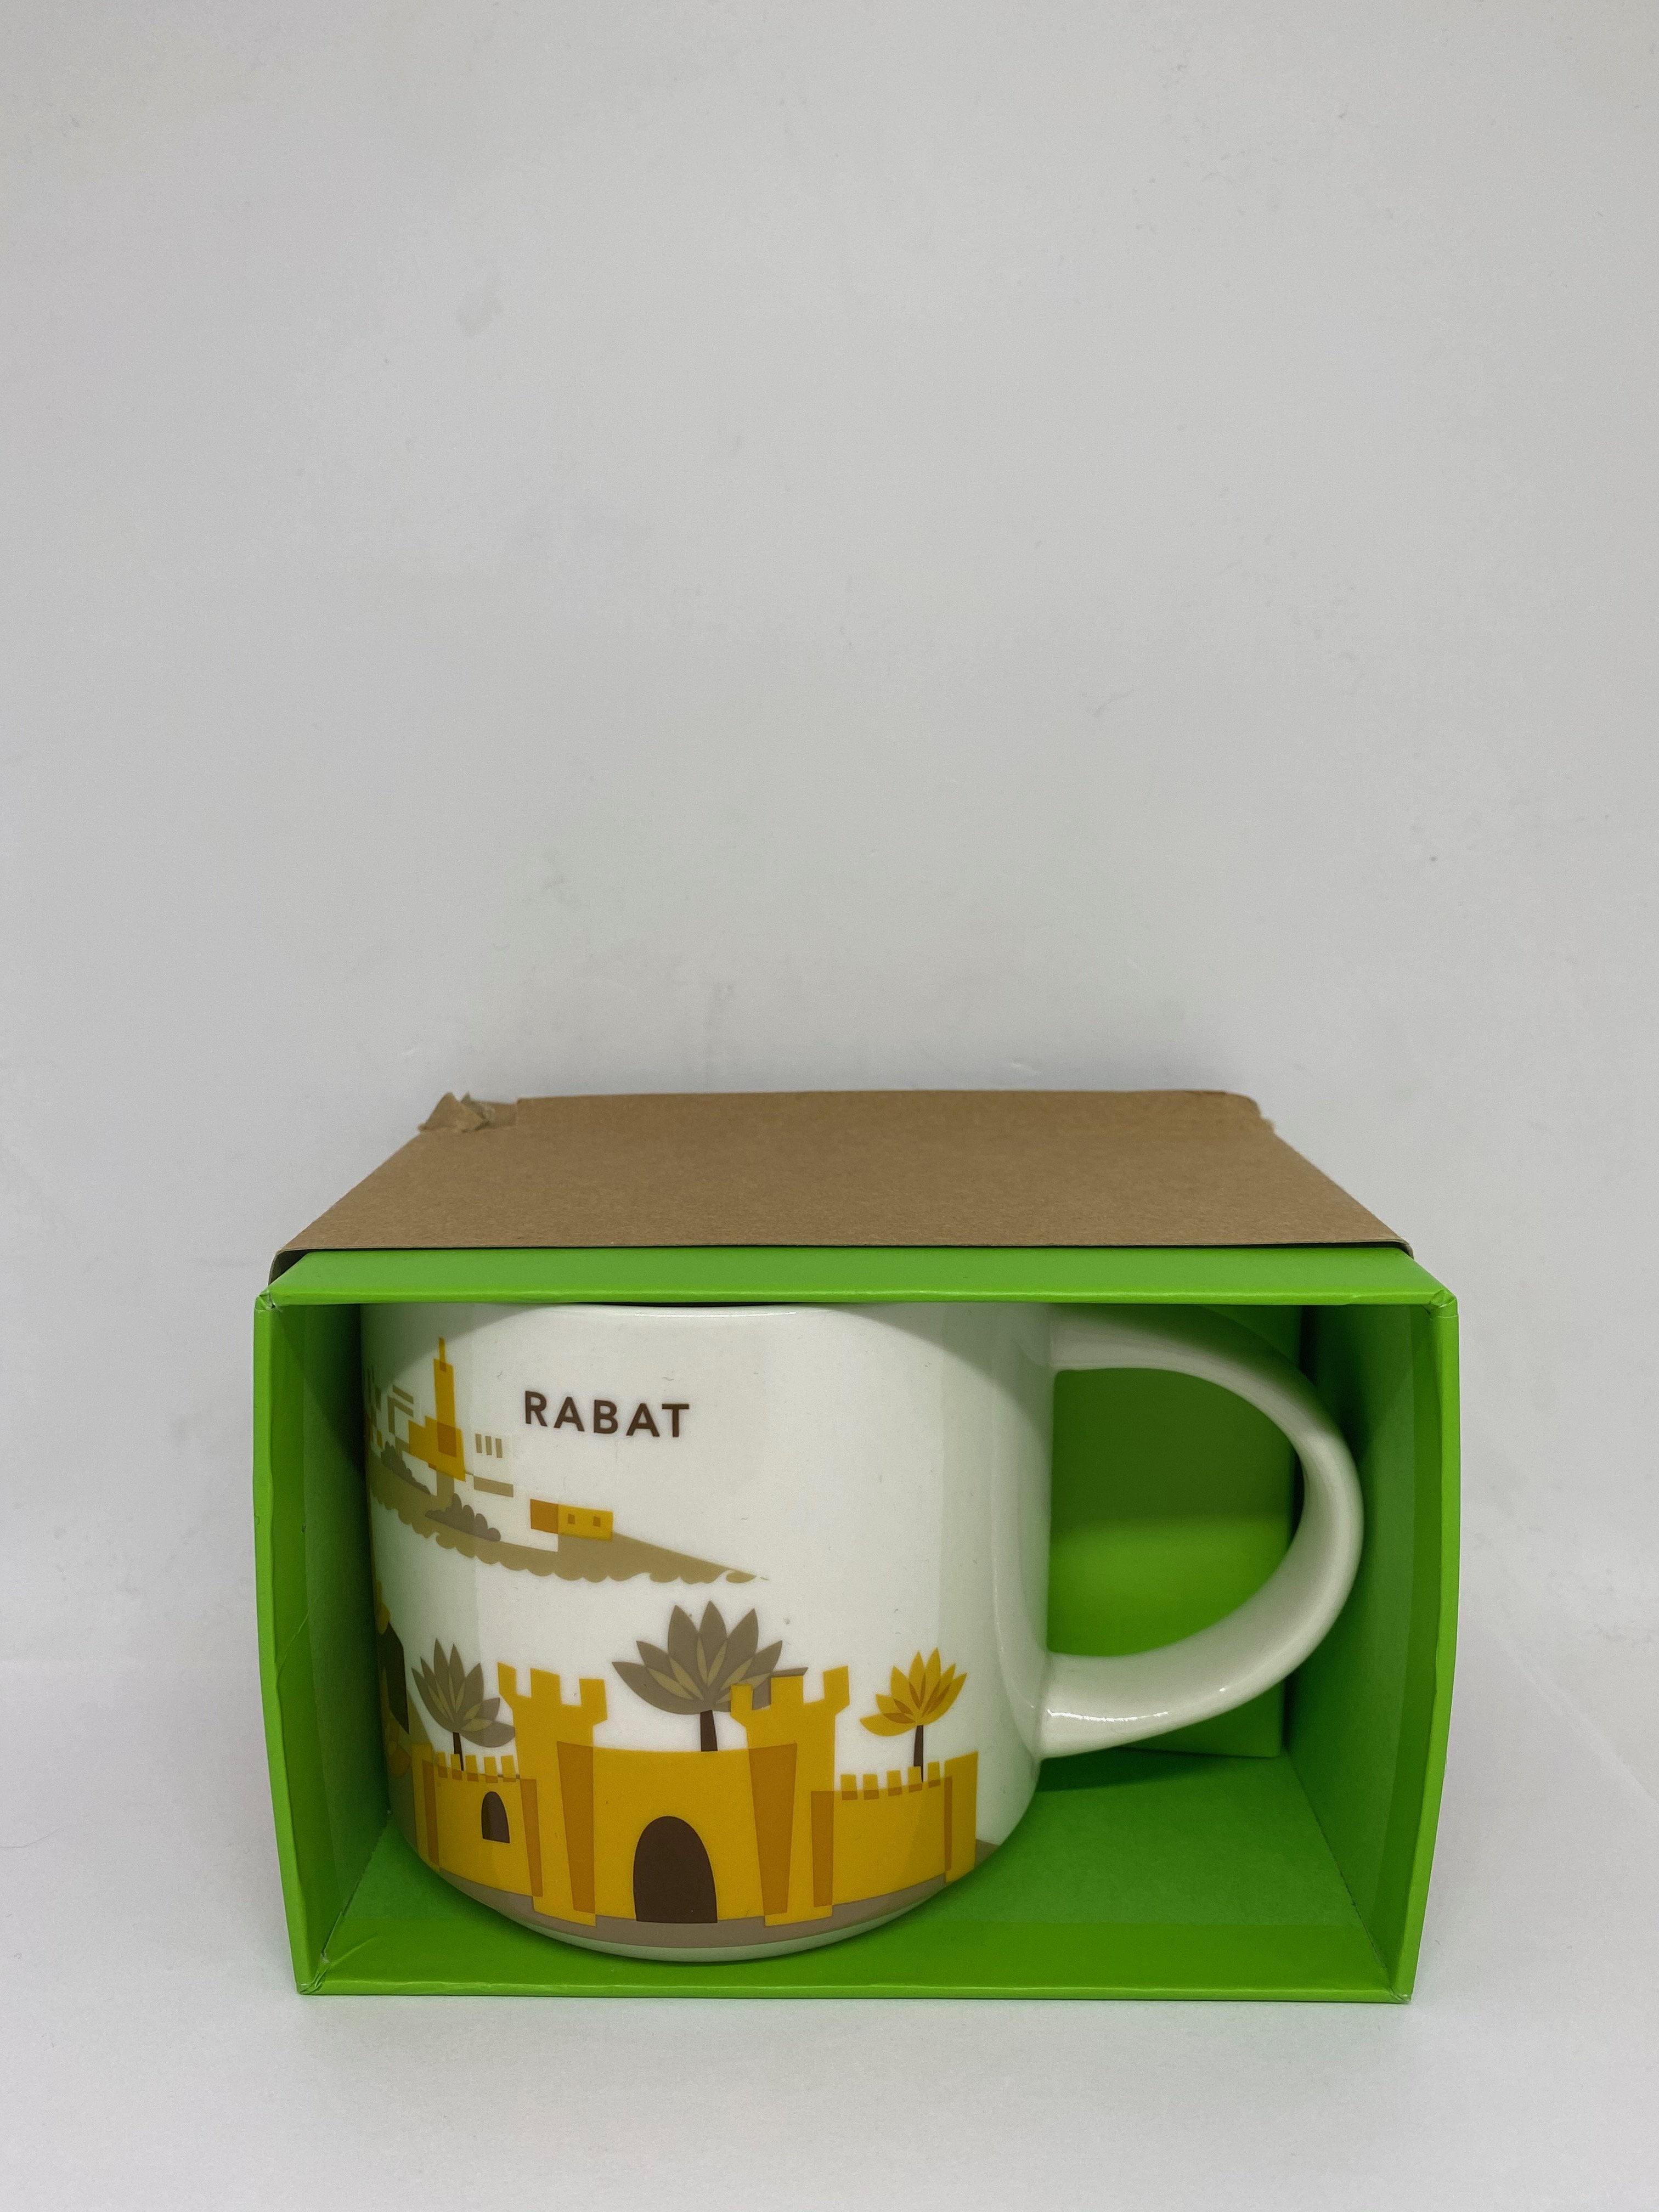 Moroccan Design Ceramic Mug 11oz Ceramic High Quality Coffee Mug Tea Mug gift for her/him